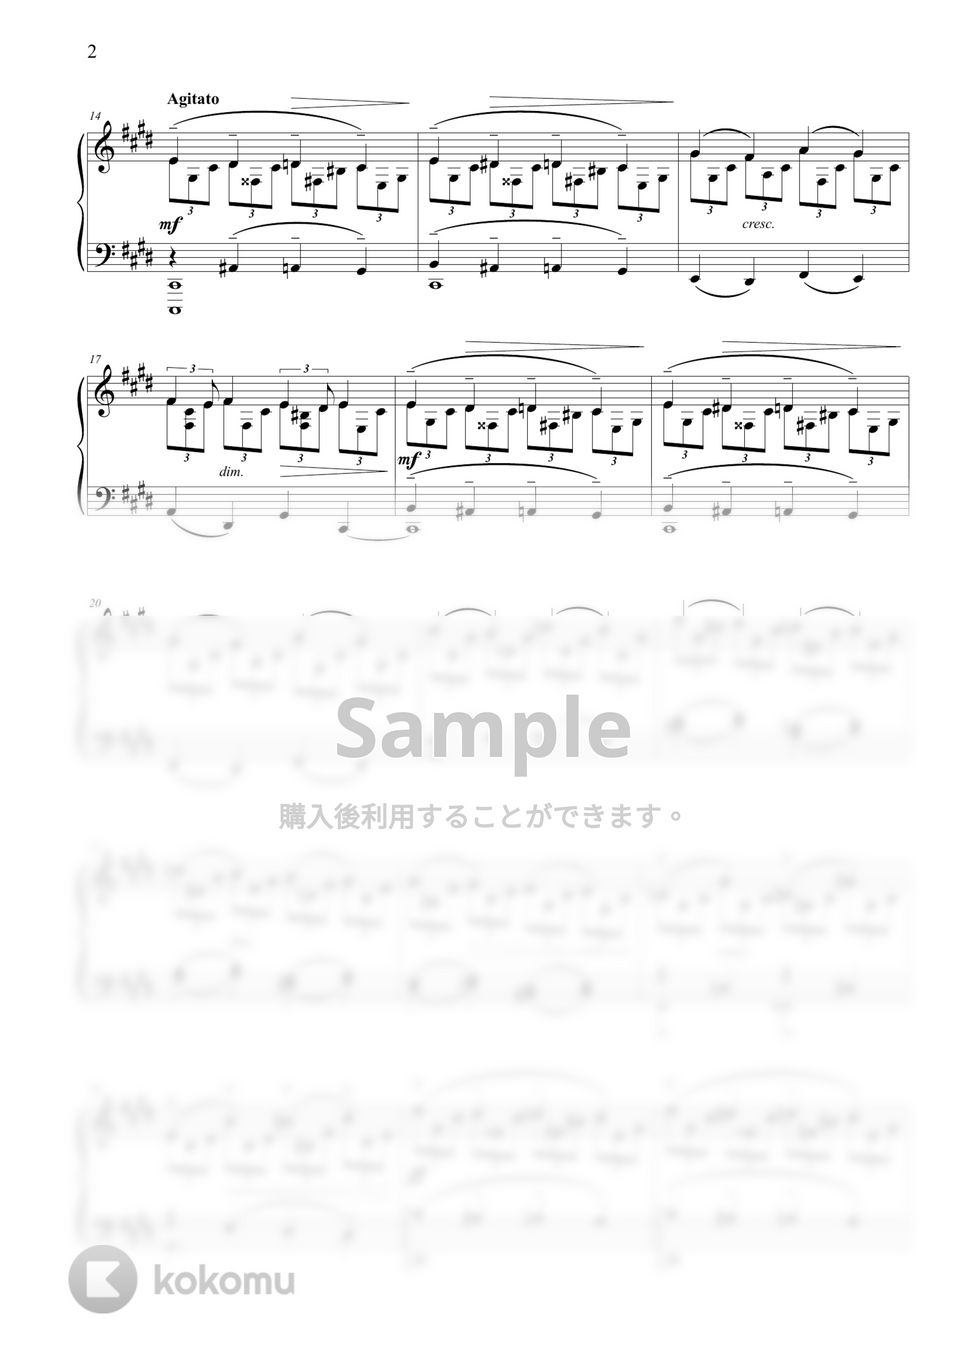 ラフマニノフ - プレリュード  Op.3 No.2 by ココミュオリジナル